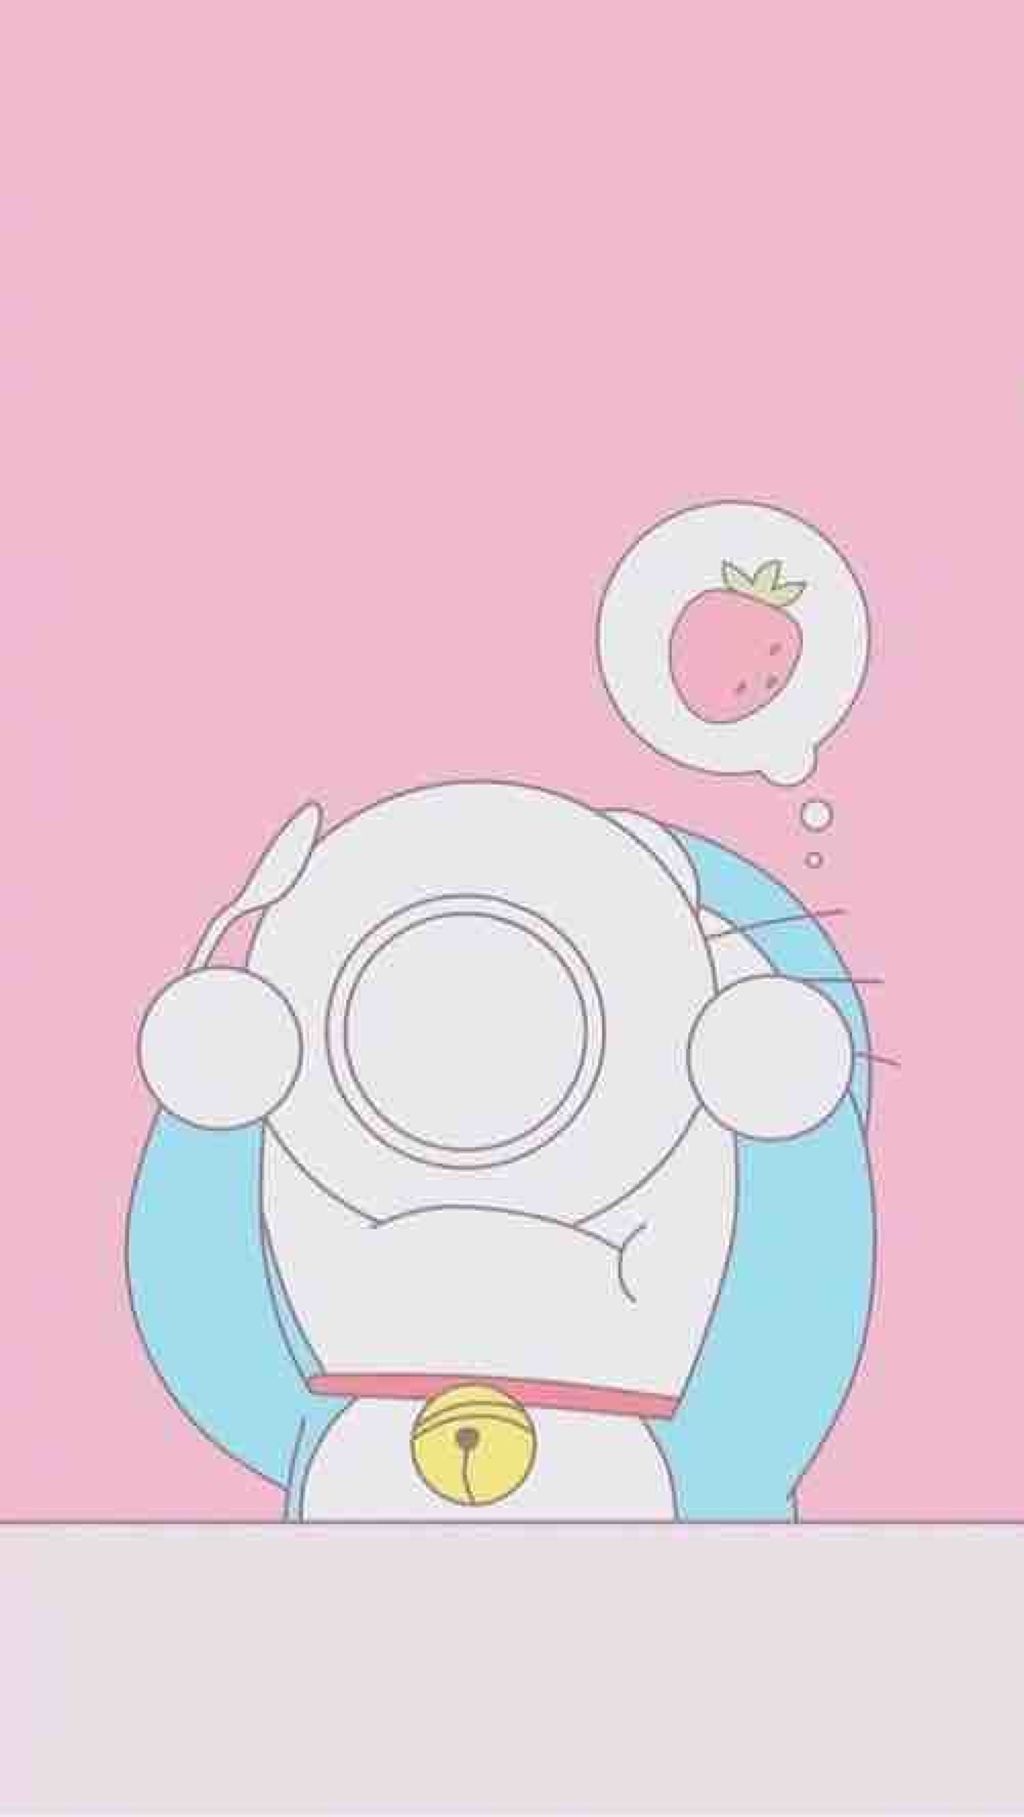 Ai đang tìm kiếm hình nền Doraemon đáng yêu cho thiết bị của mình? Đừng bỏ lỡ bức ảnh bên dưới - chú mèo máy thân thiện sẽ đem đến cho bạn sự ngọt ngào và vui tươi trong mỗi ngày.